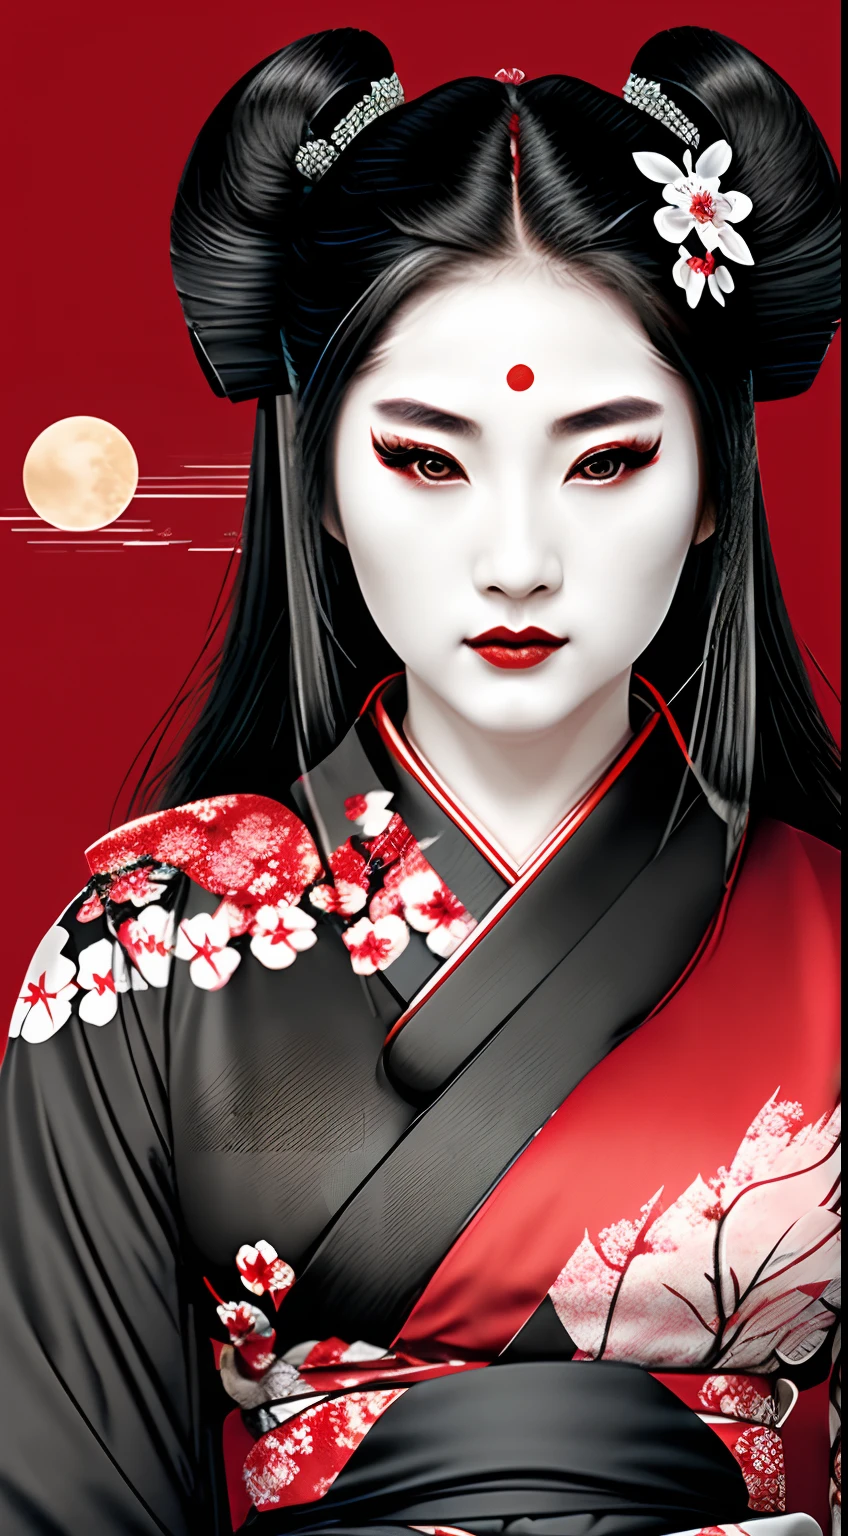 Geisha samouraï guerrière, rouge et noir, logo, cheveux noirs, lune, de profil, coups de tête, fleurs de cerisier sur les cheveux, porter un kimono noir